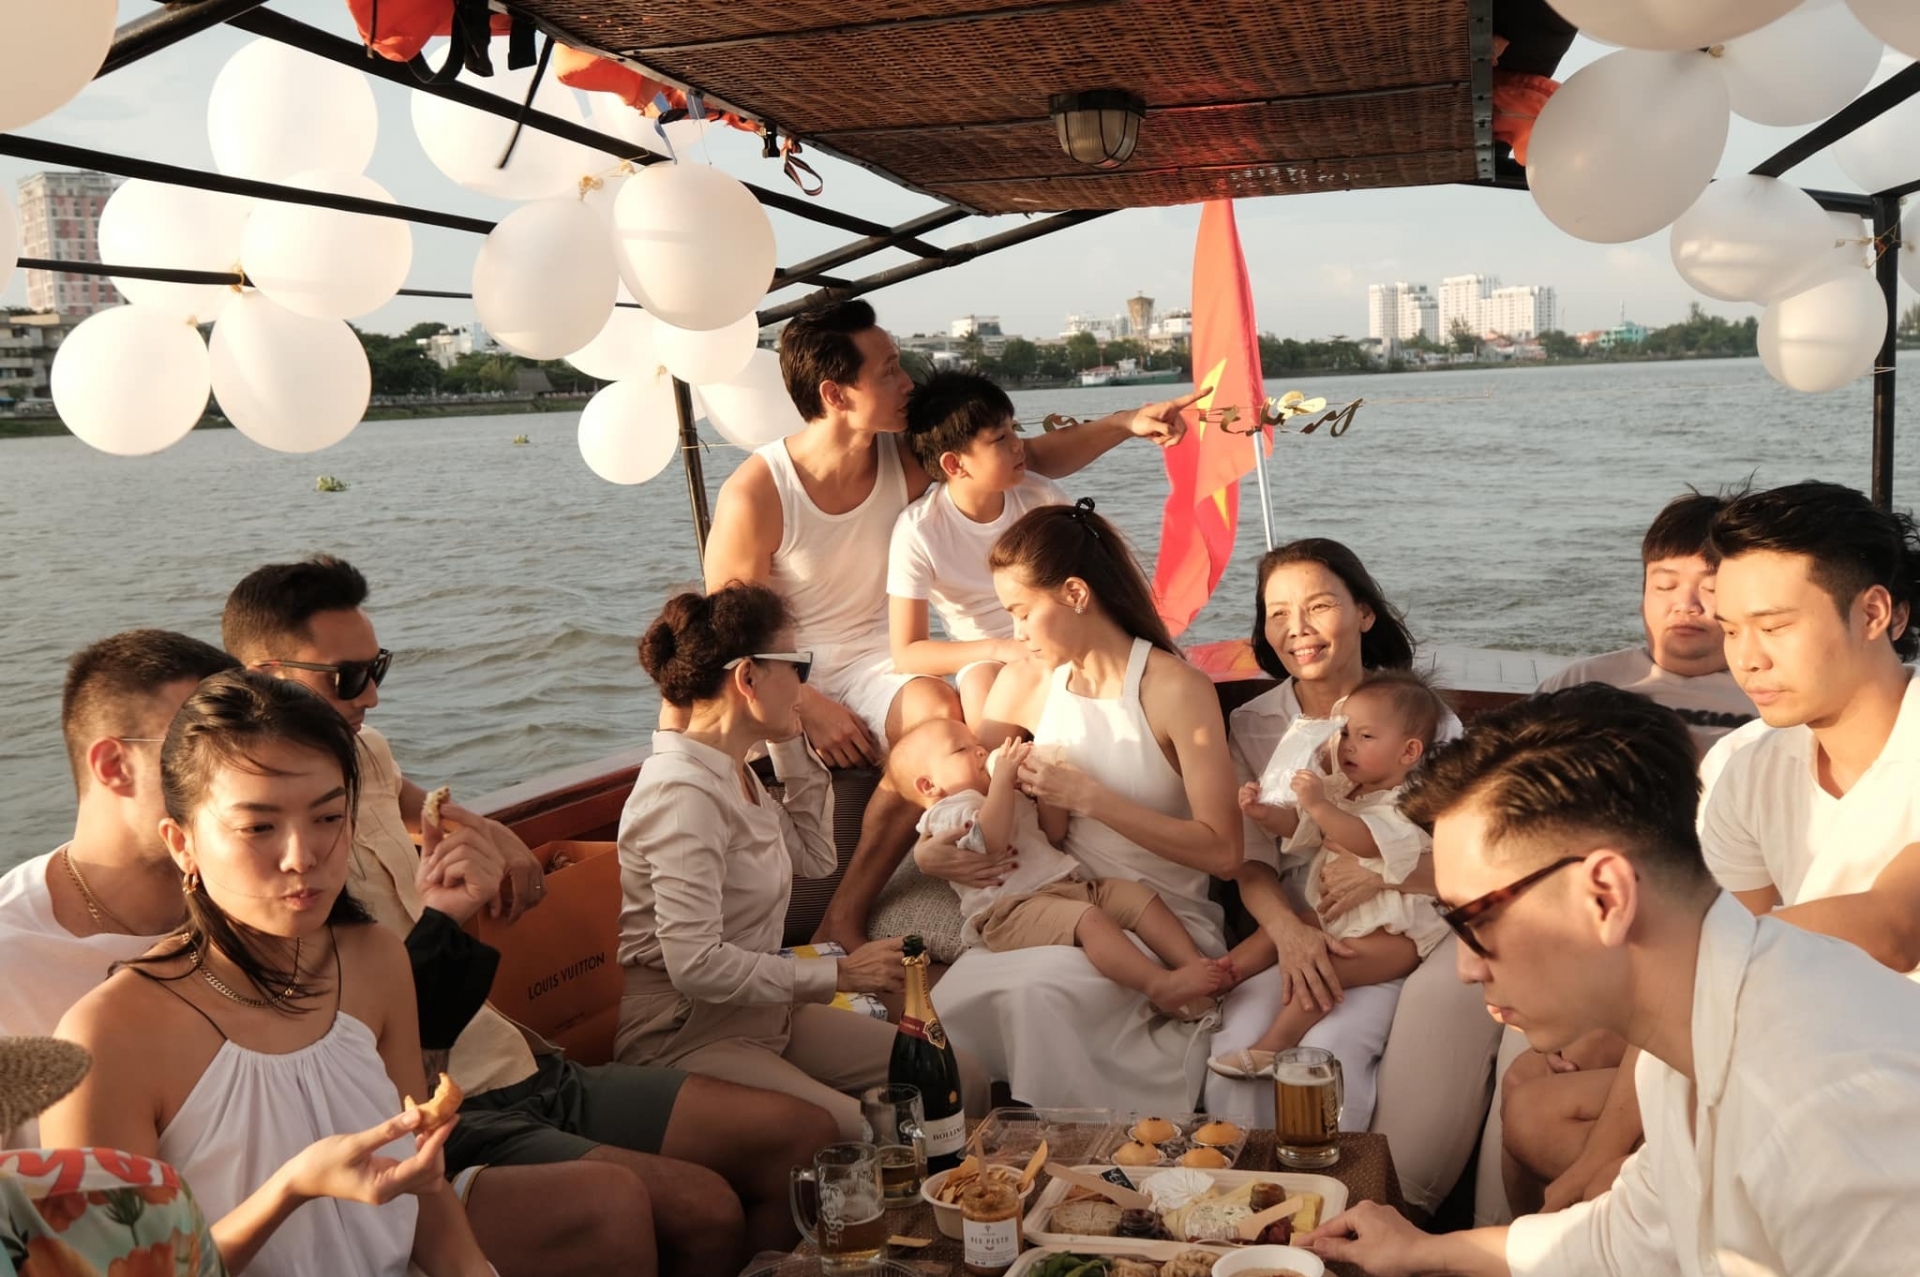 Kim Lý đã có một ngày sinh nhật tuổi 38 cực ấm cúng bên gia đình và bạn bè. Cả chủ nhân của bữa tiệc lẫn khách mời đều diện các trang phục màu trắng đơn giản và đồng điệu với nhau.